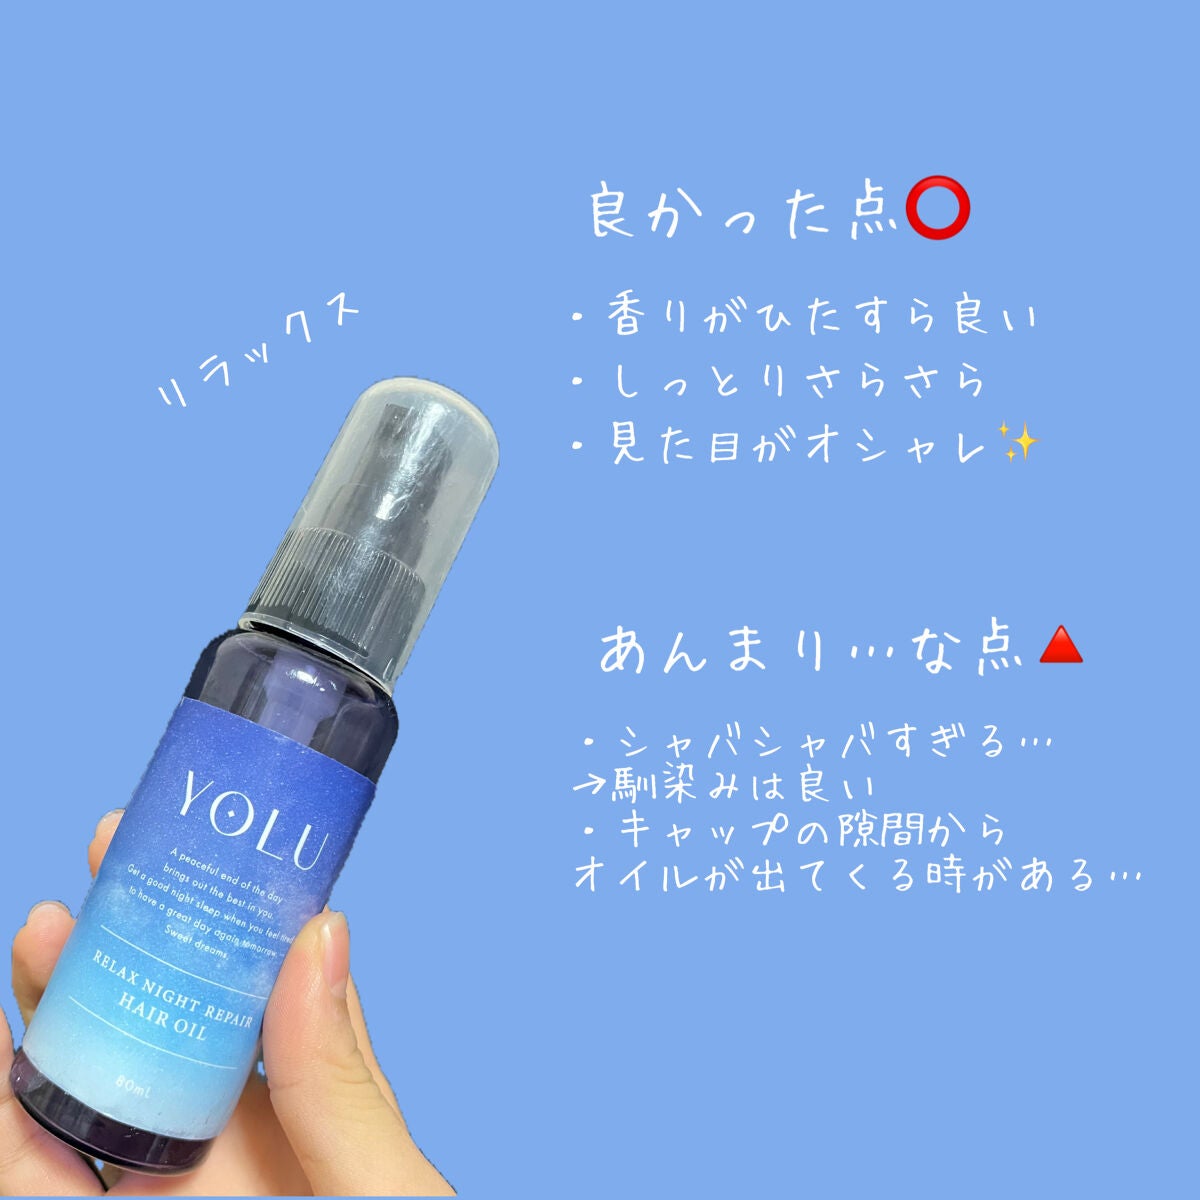 Yolu ヘアオイル - スタイリング剤